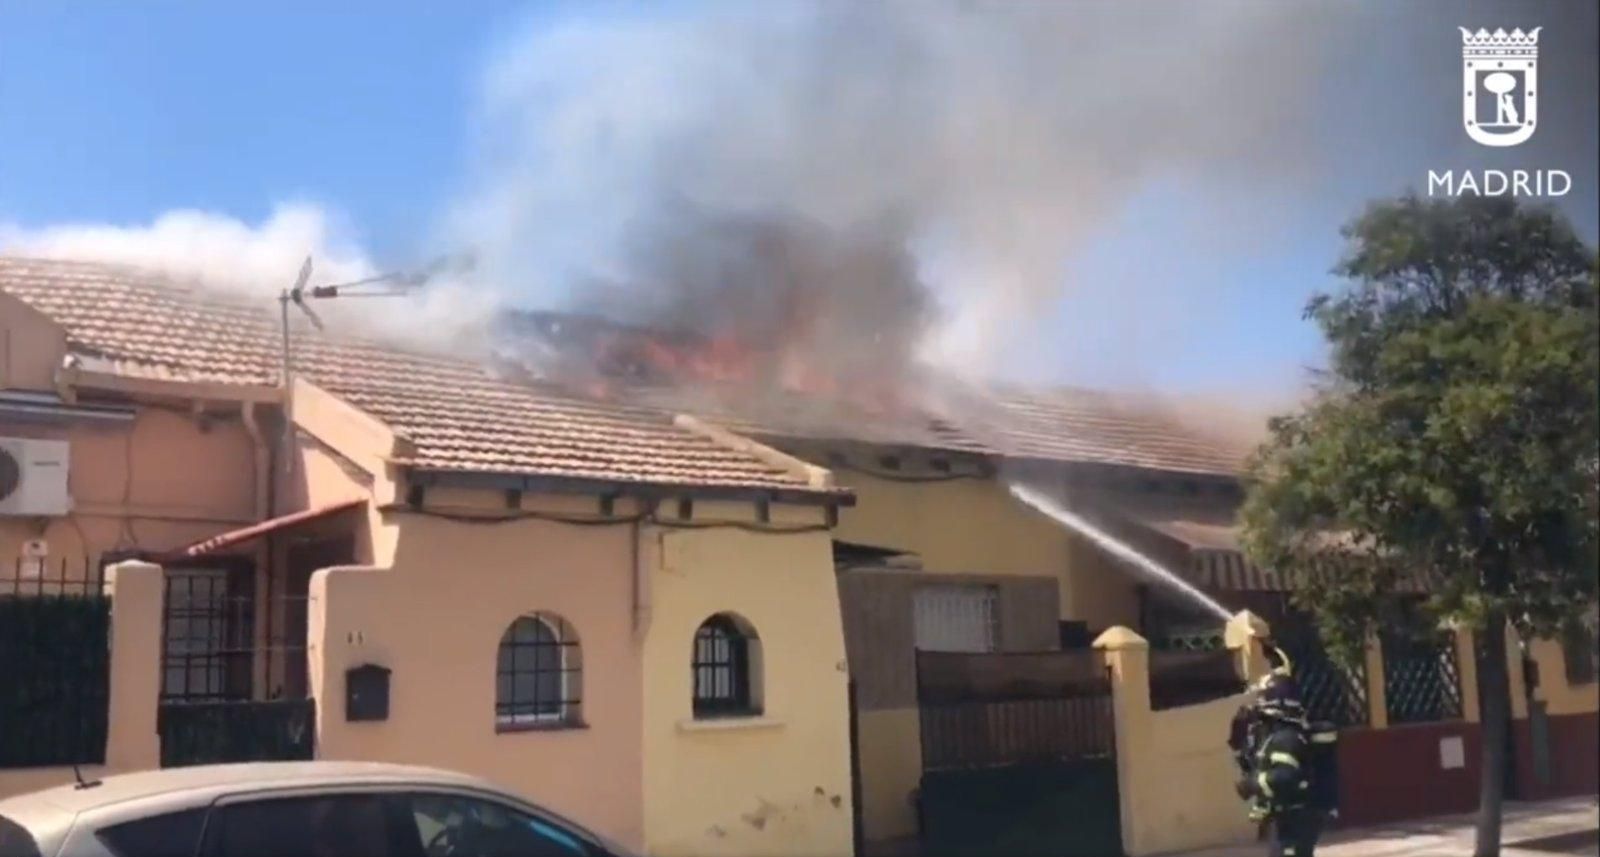  Arde la cubierta de una vivienda unifamiliar en Usera y el fuego se propaga al tejado de dos casas colindantes